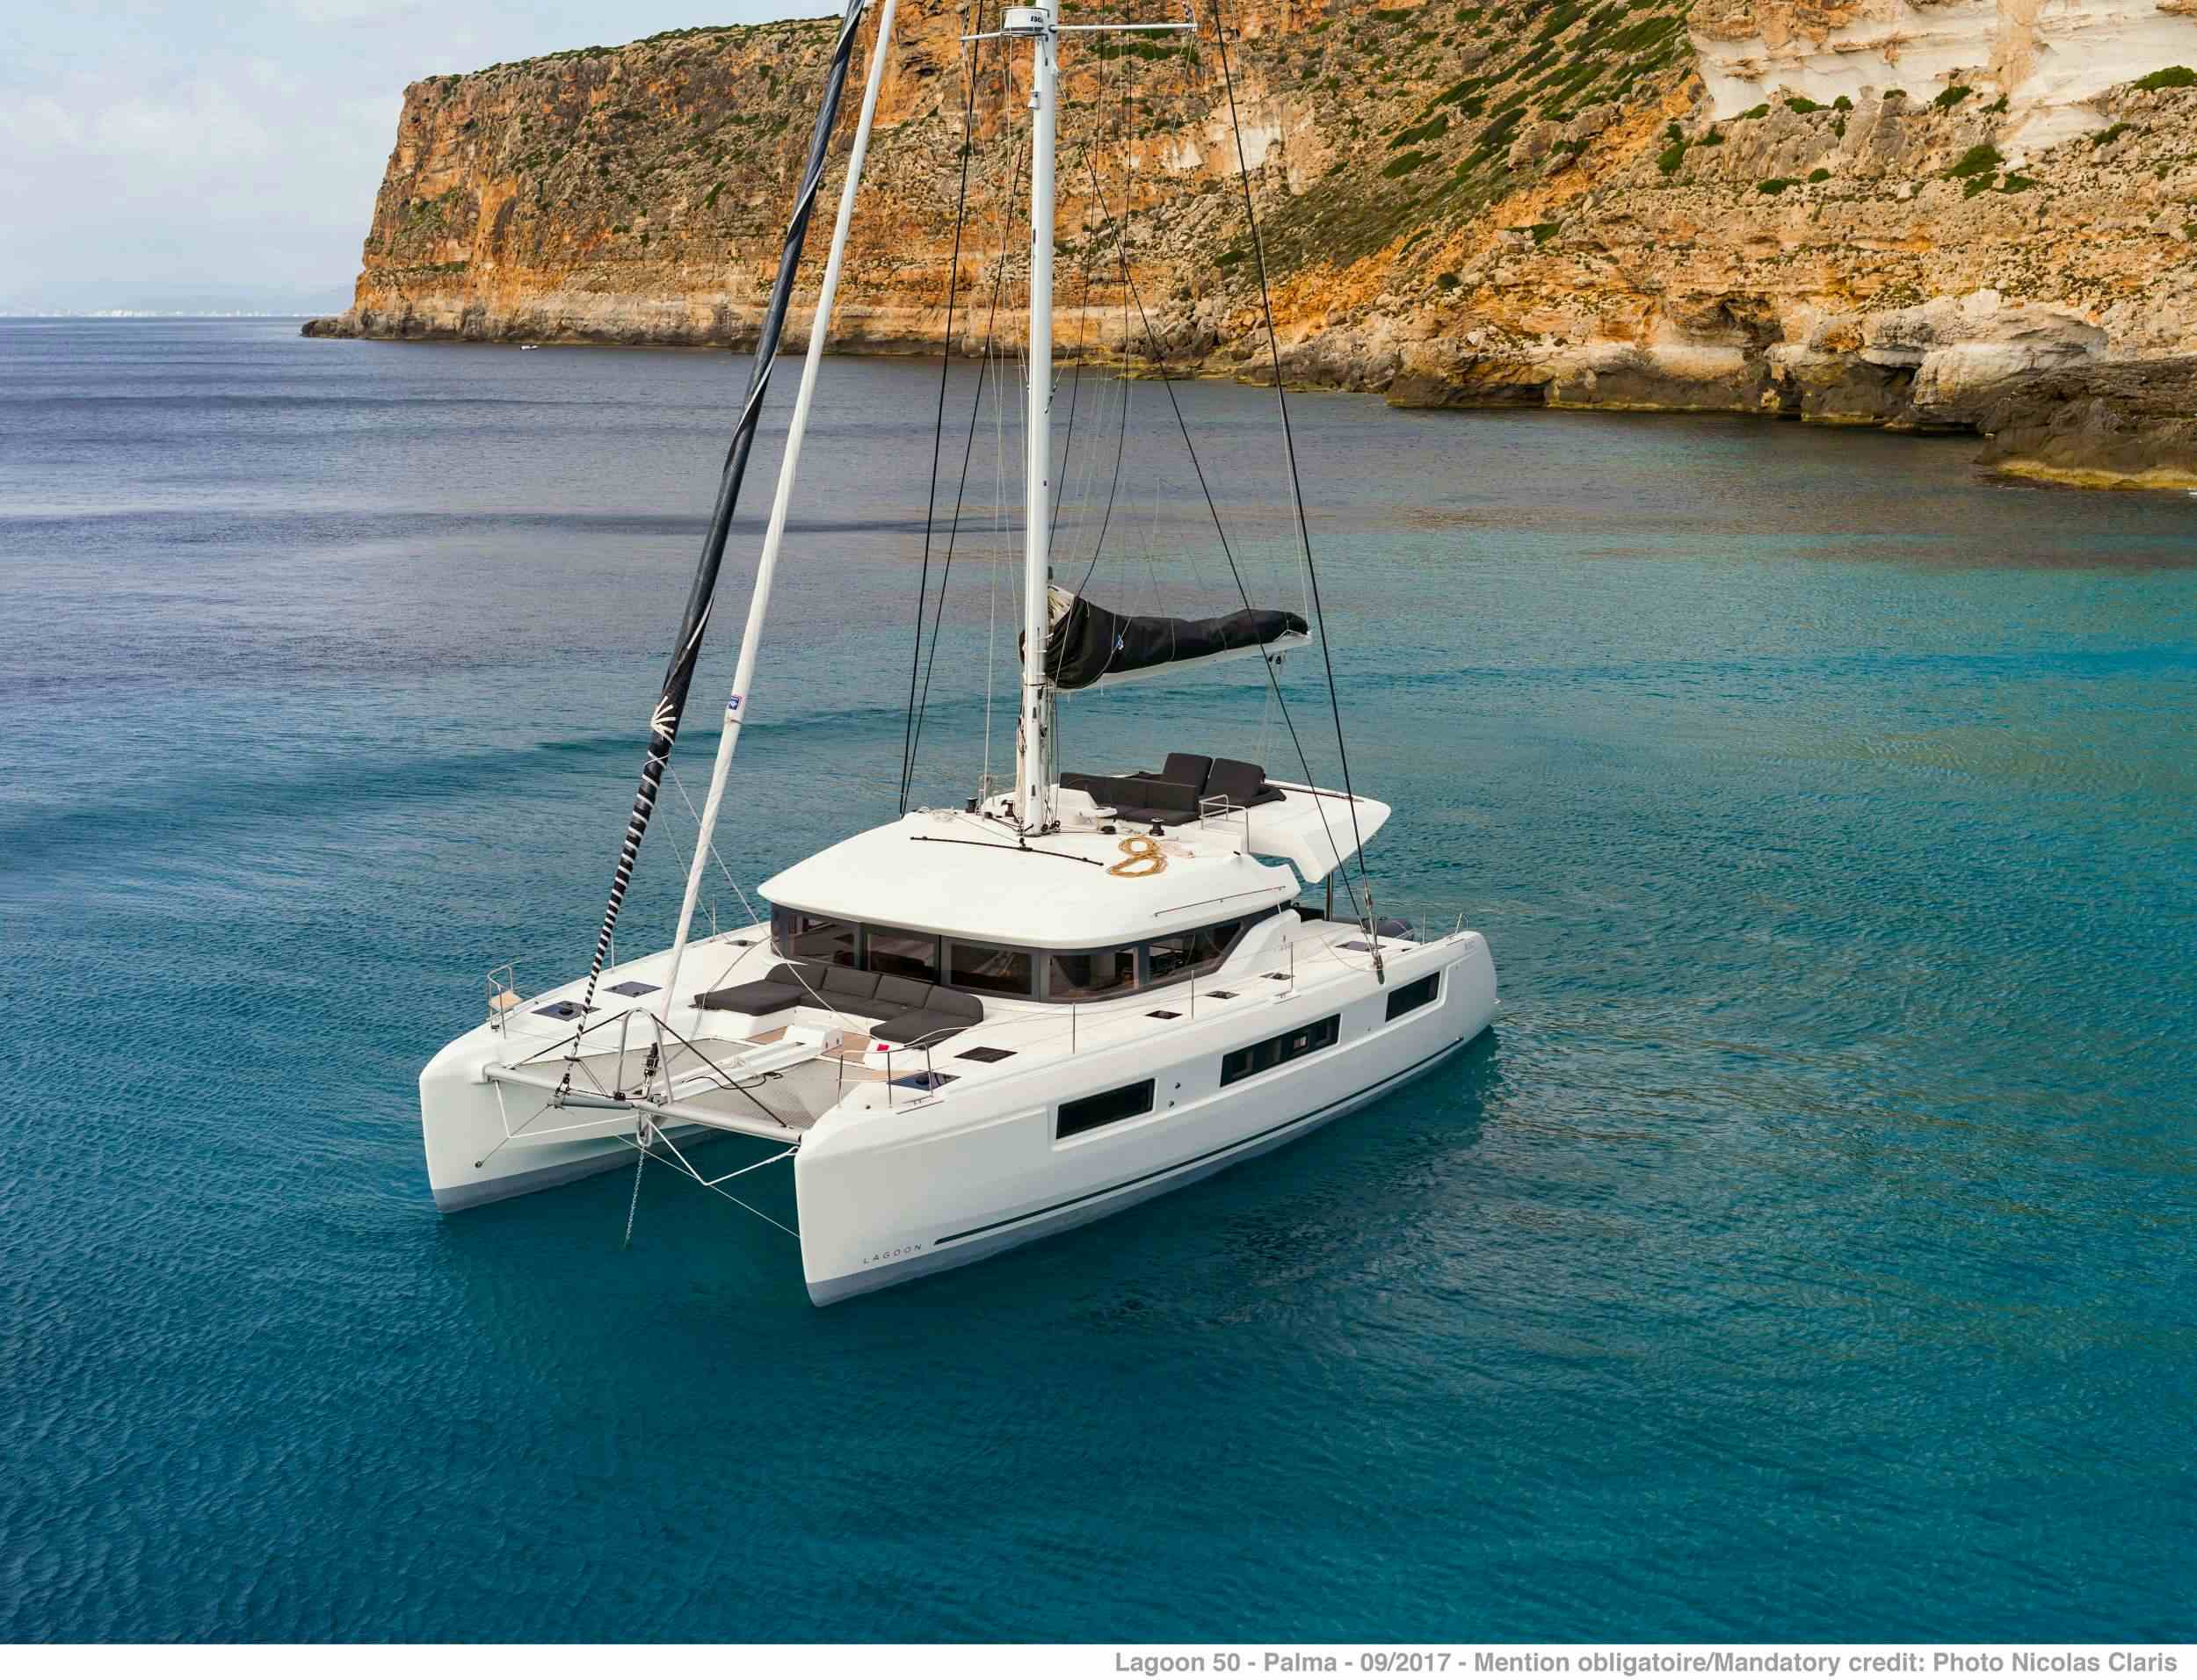 ONEIDA 2 - Yacht Charter Mali Losinj & Boat hire in Greece 1